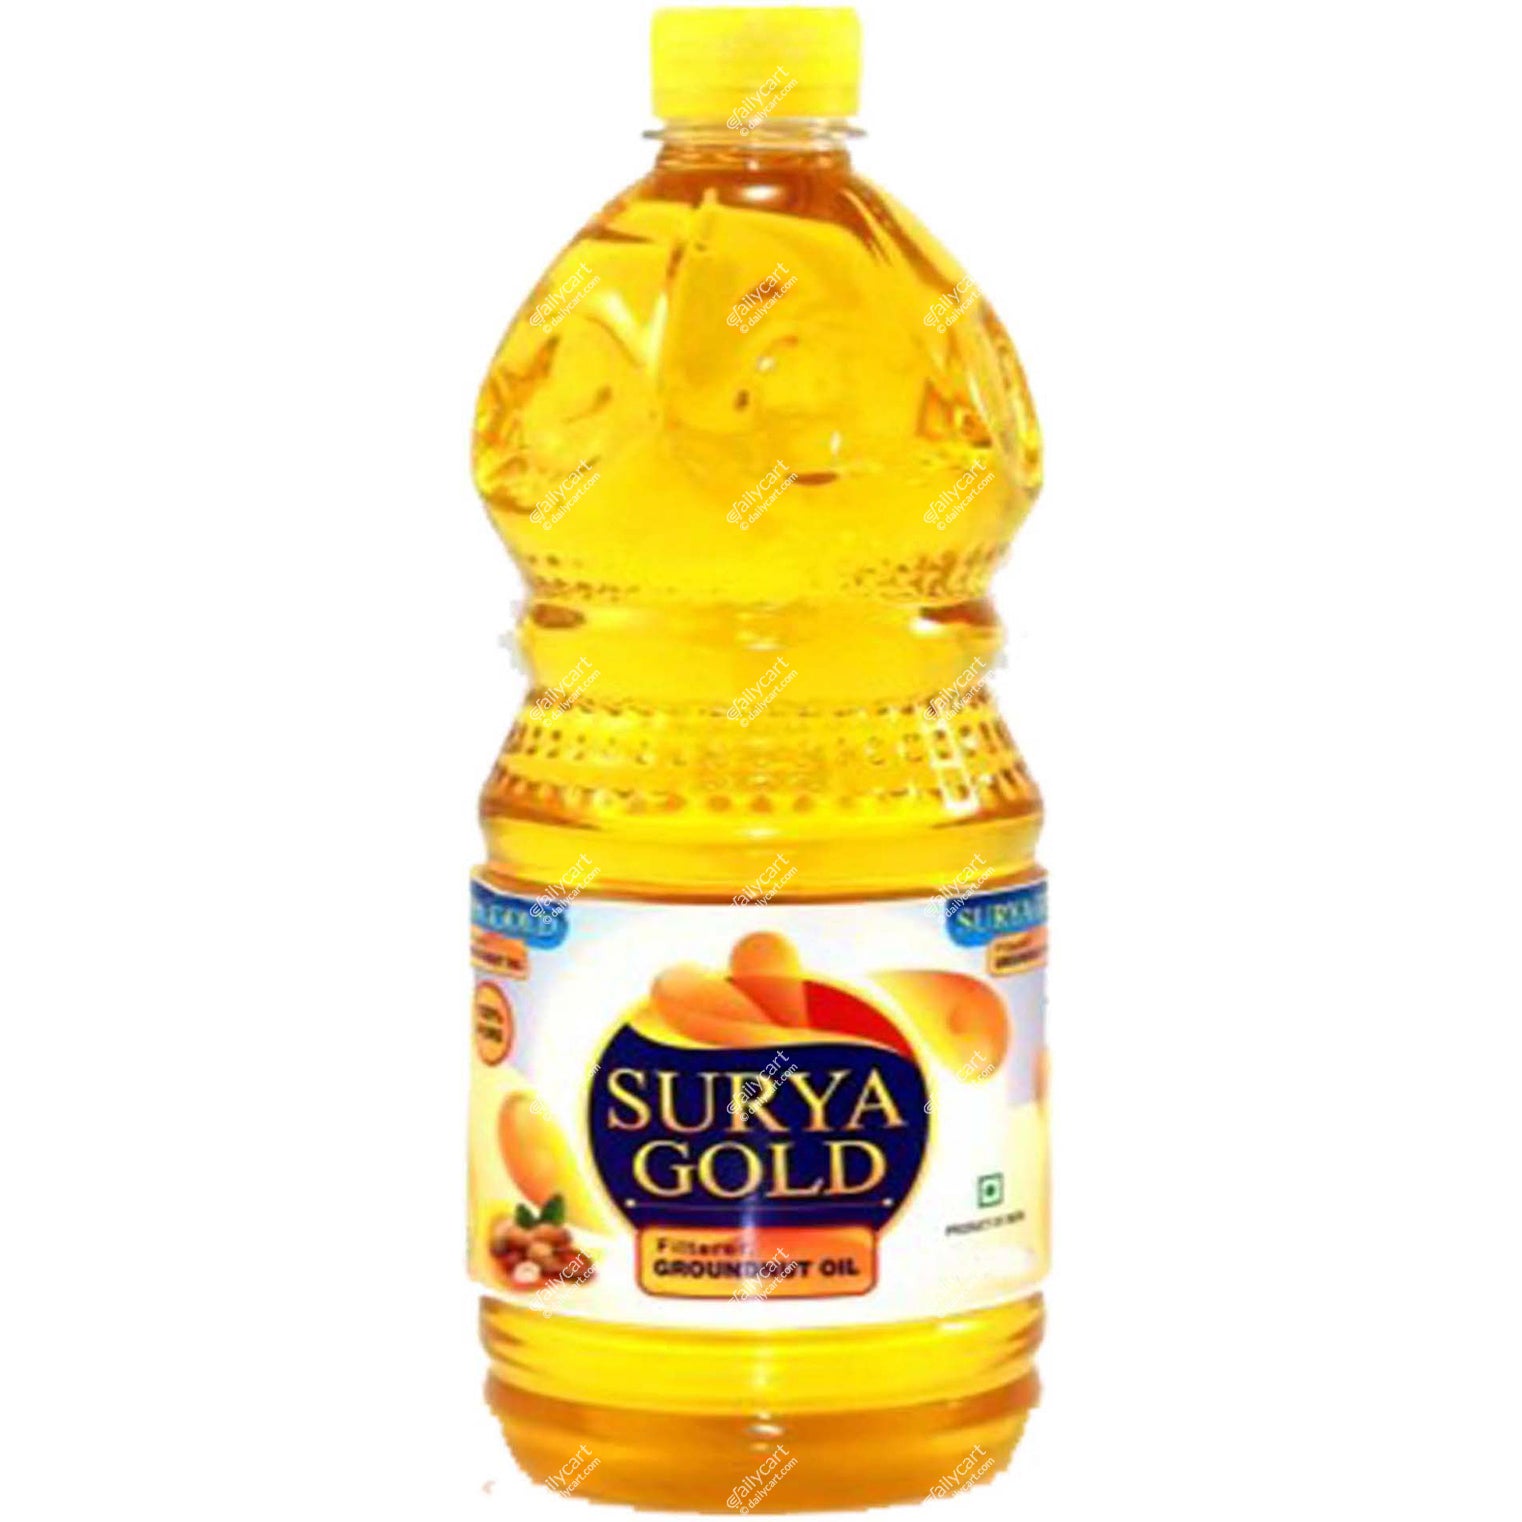 Surya Gold Ground Nut Oil, 2 litre